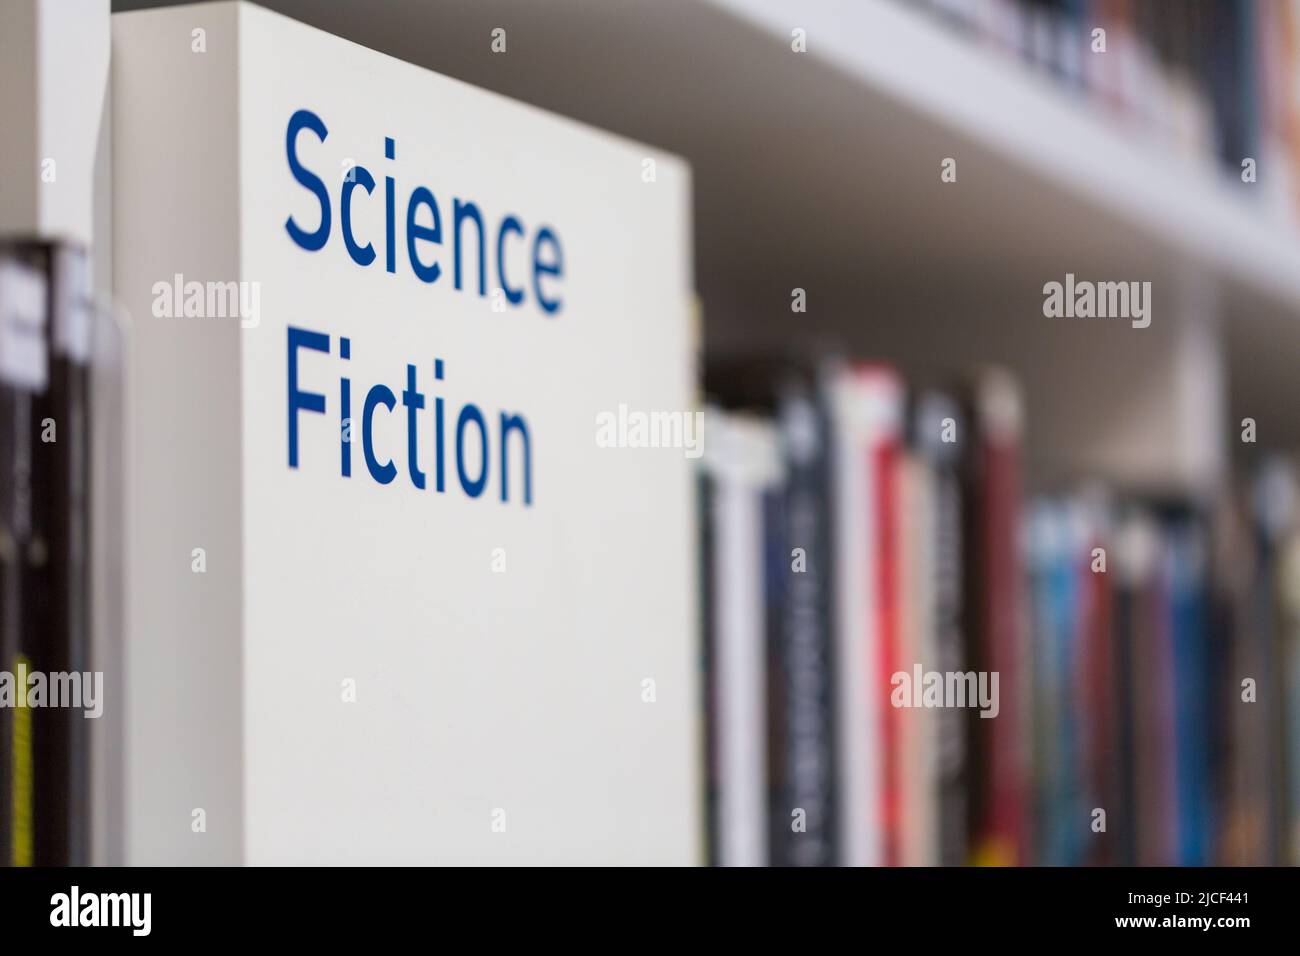 Scrivere 'Sciene Fiction' in una libreria in una biblioteca pubblica. Simbolo della letteratura futuristica e del genere fantascientifico. Foto Stock